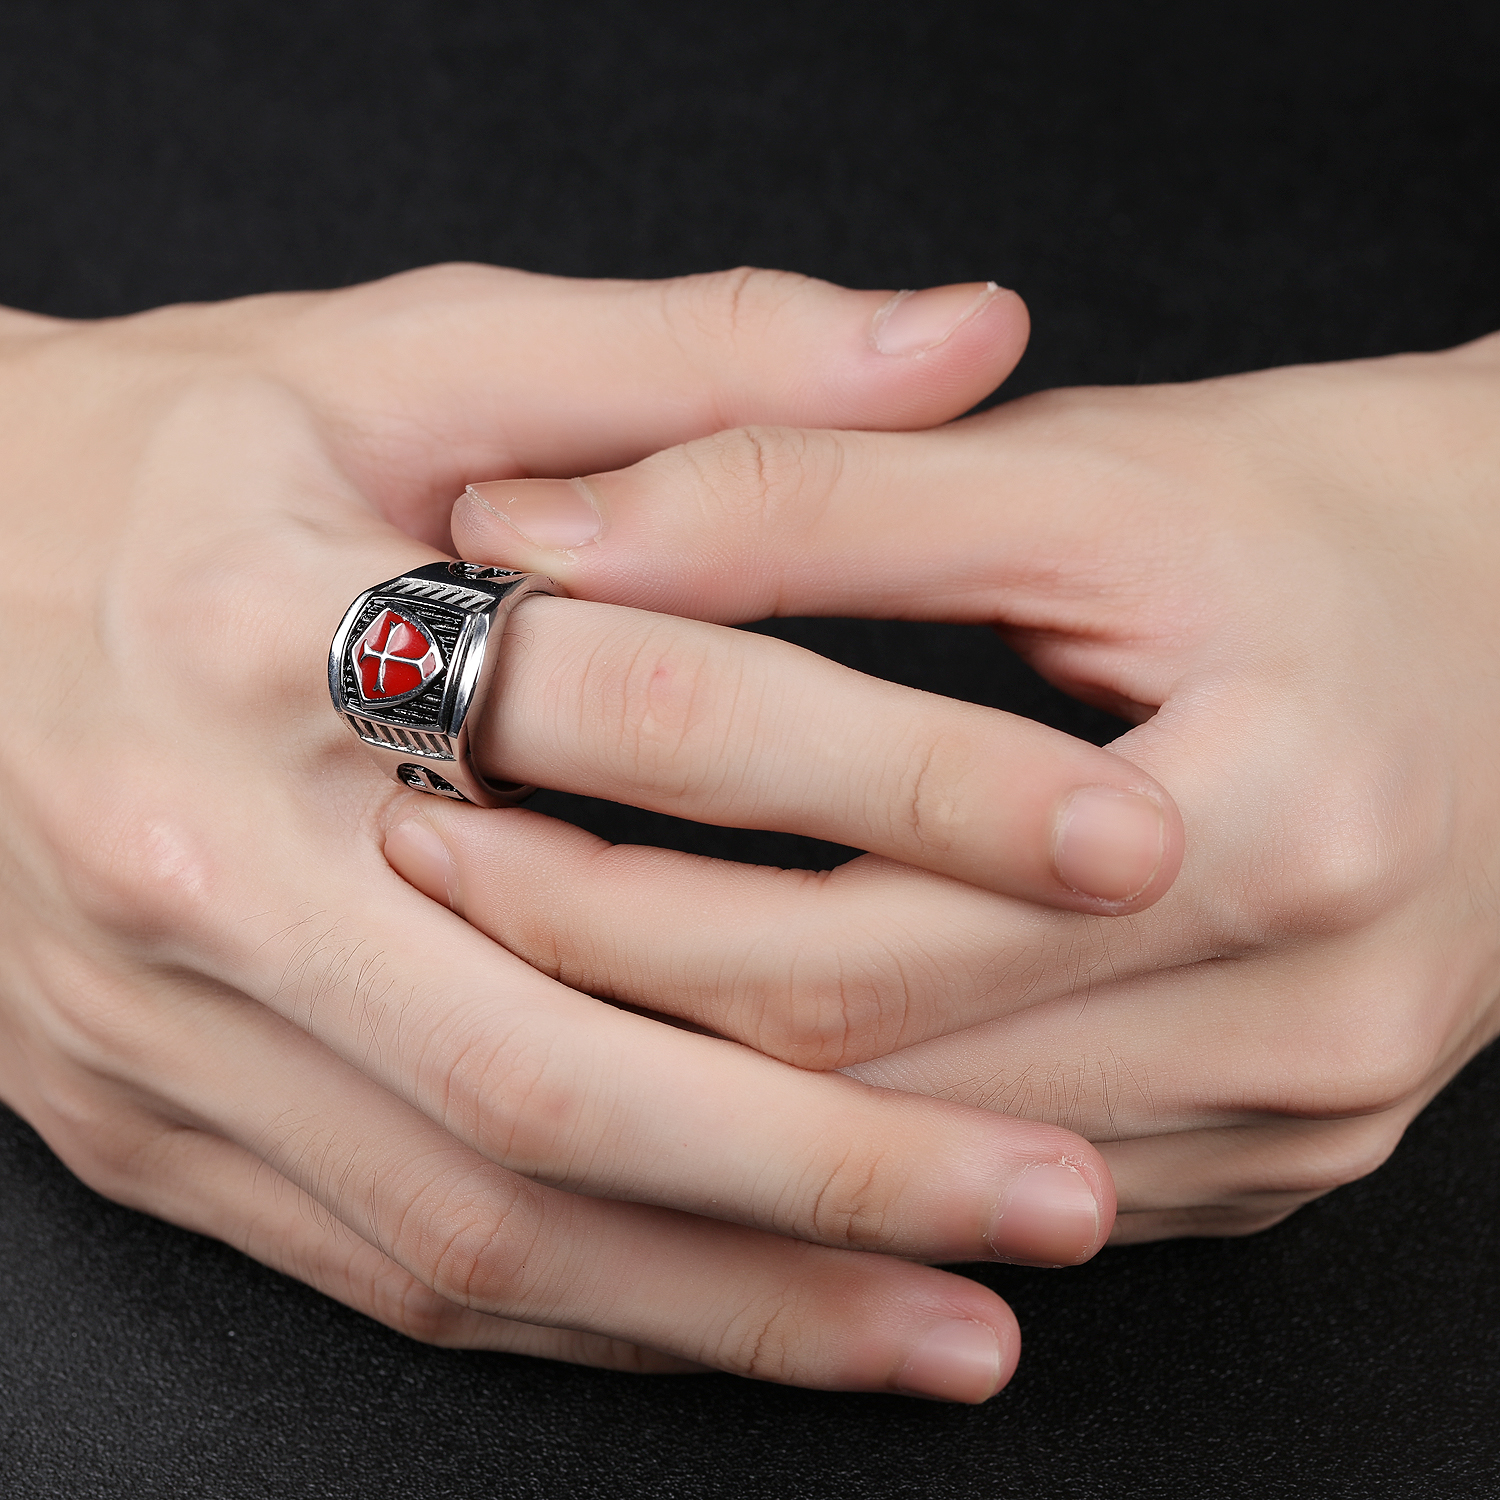 кольцо на большом пальце геи фото 53